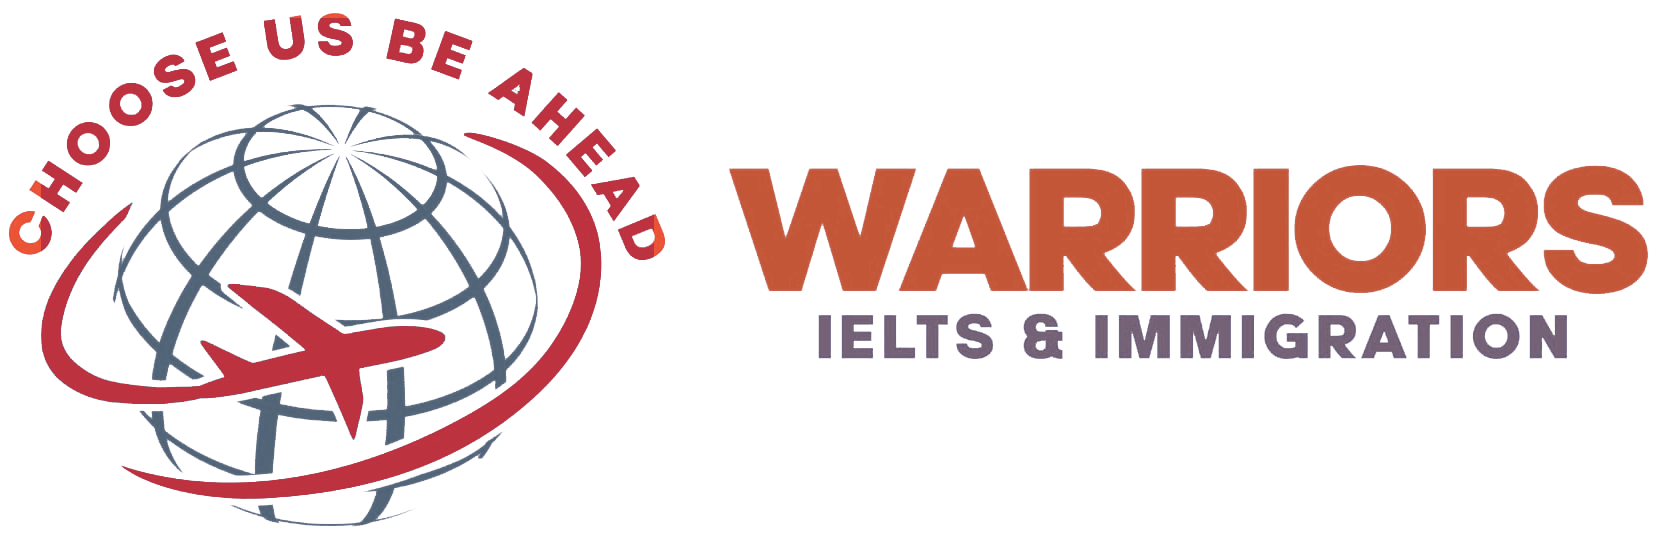 warriors ielts logo | warriorsielts.com